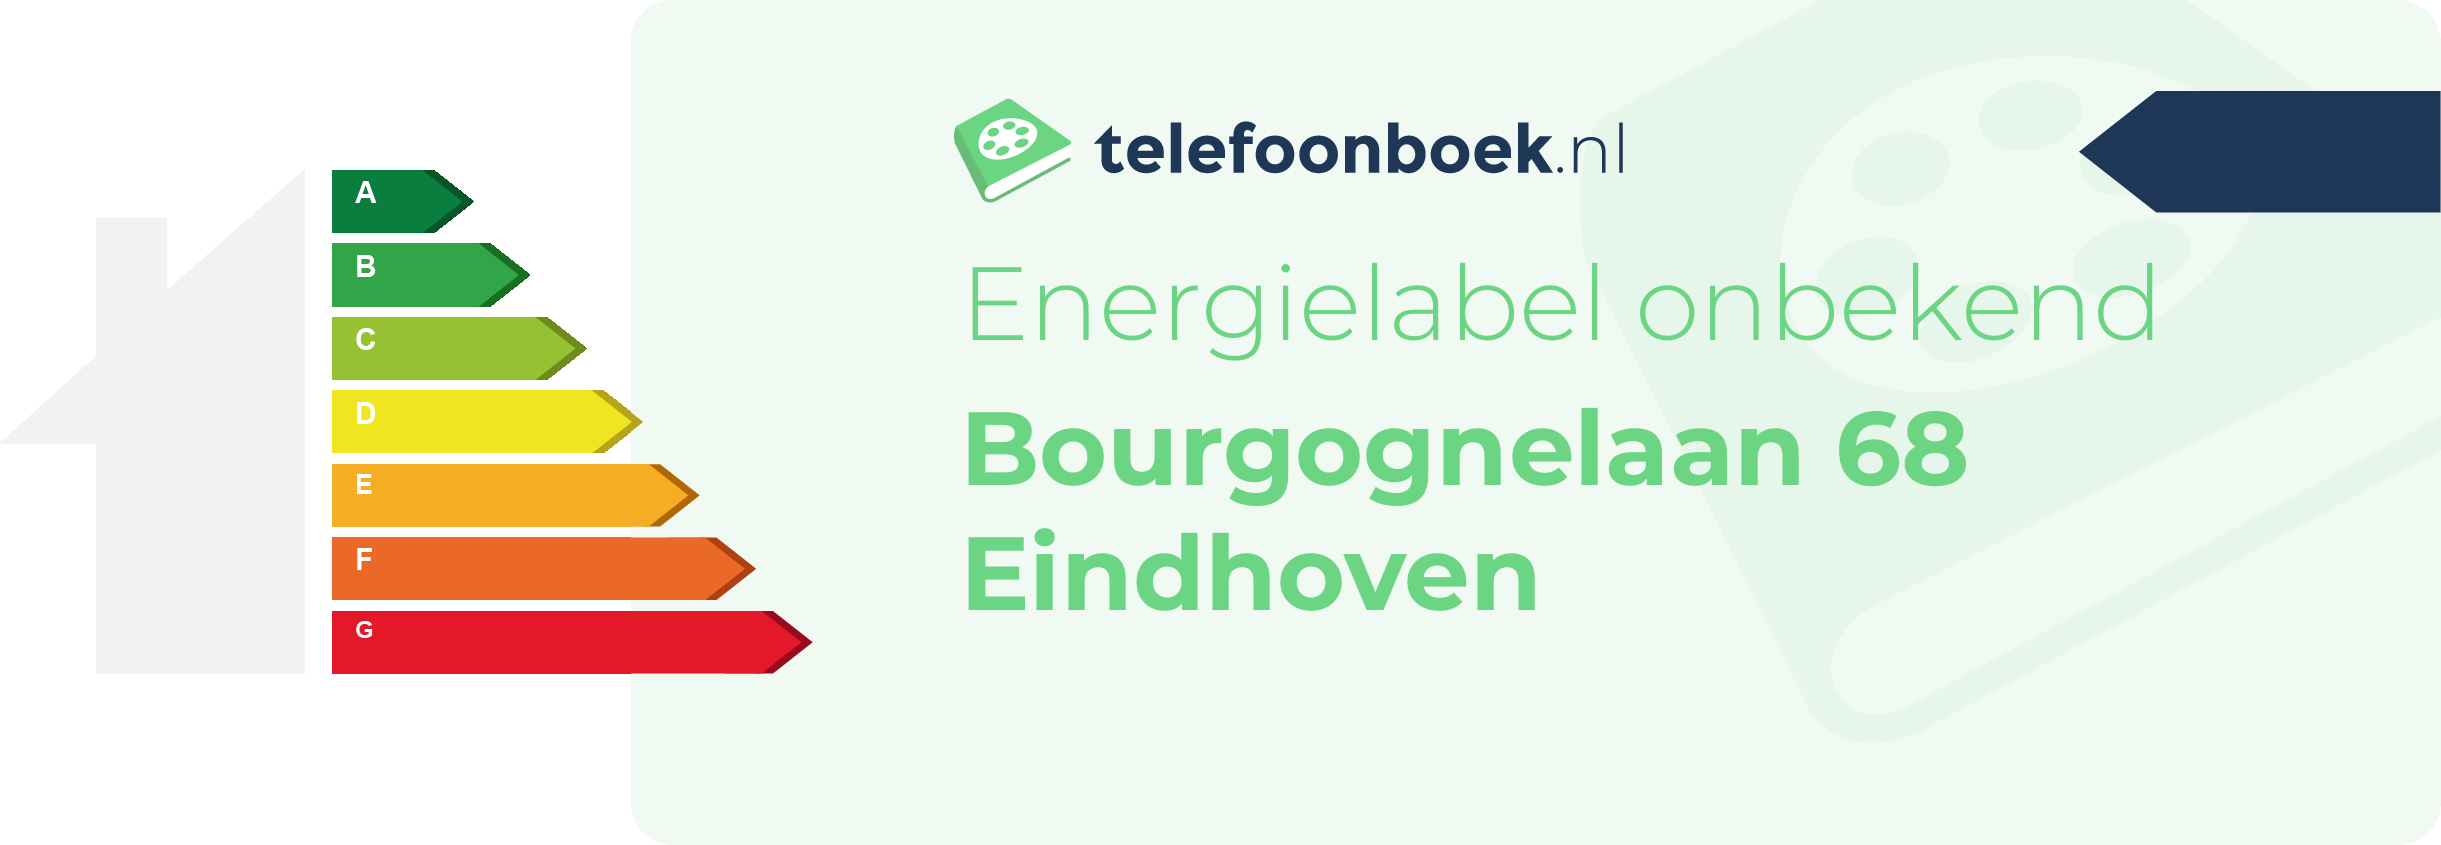 Energielabel Bourgognelaan 68 Eindhoven